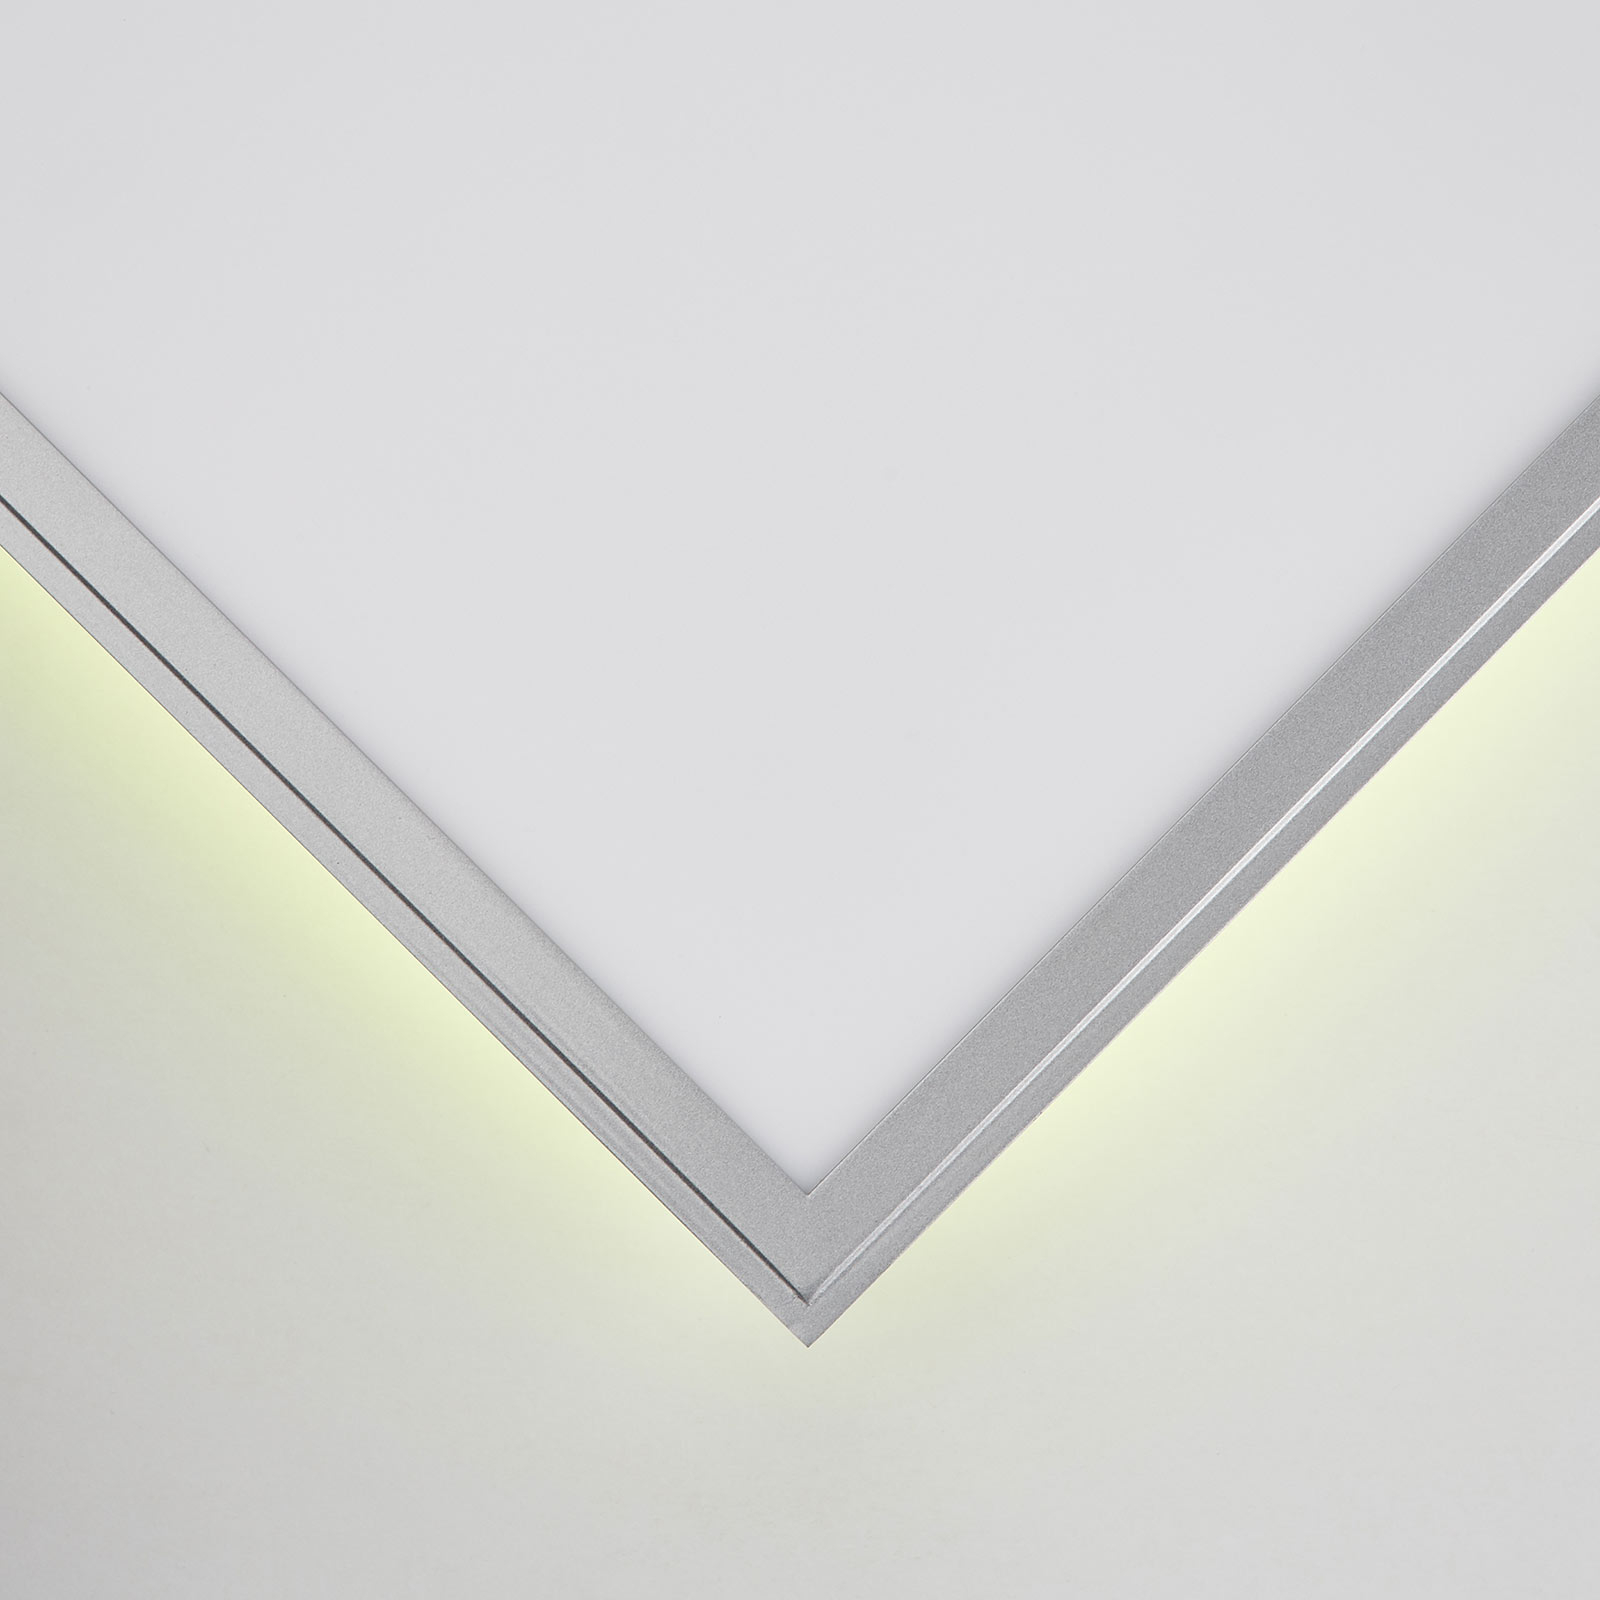 LED ceiling light Alissa, 59.5 x 59.5 cm